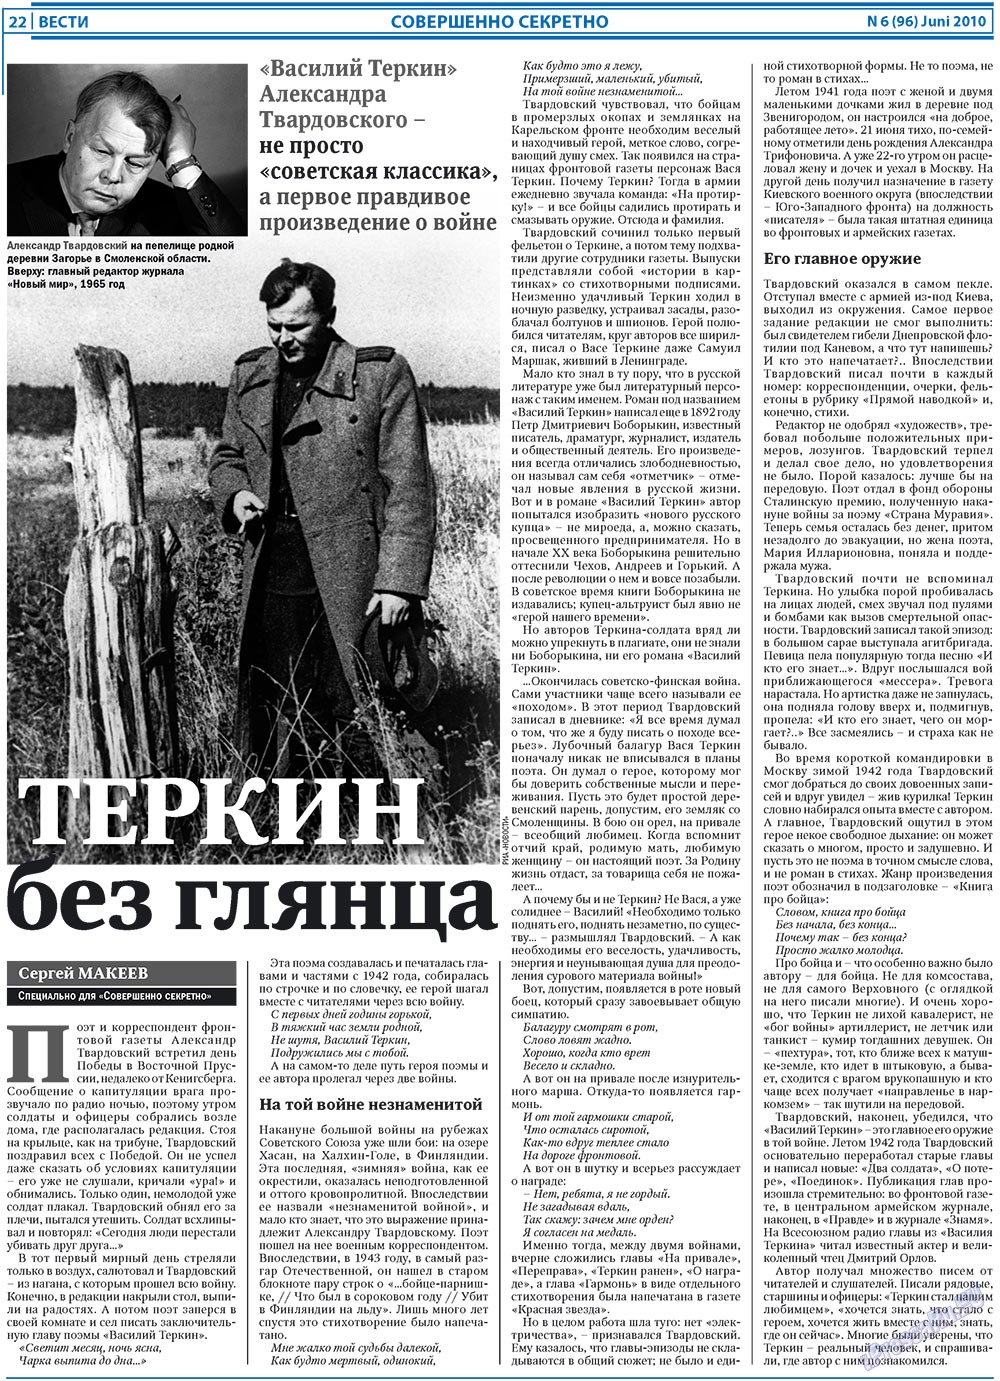 Вести, газета. 2010 №6 стр.22